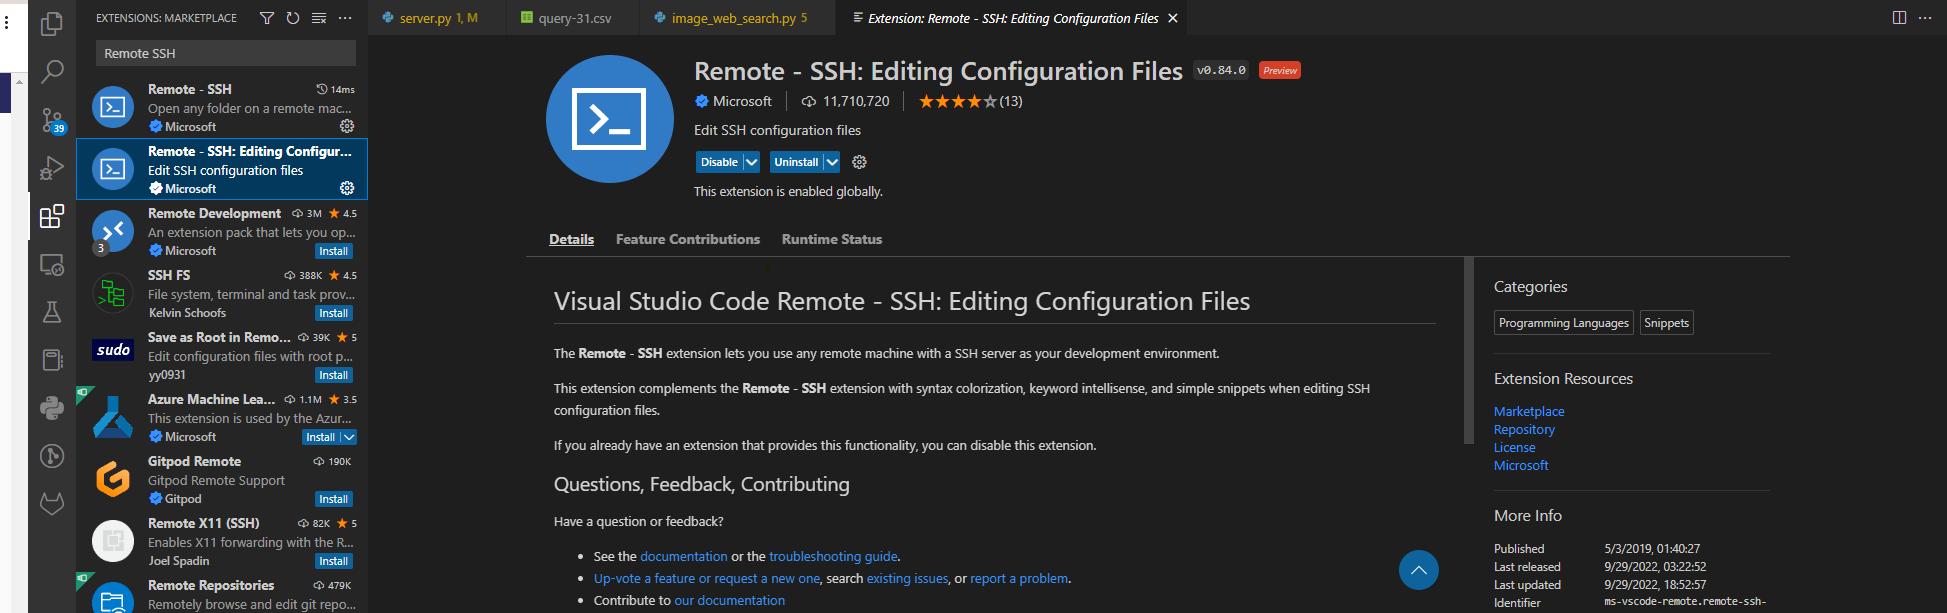 Remote -SSH Editing Configuration